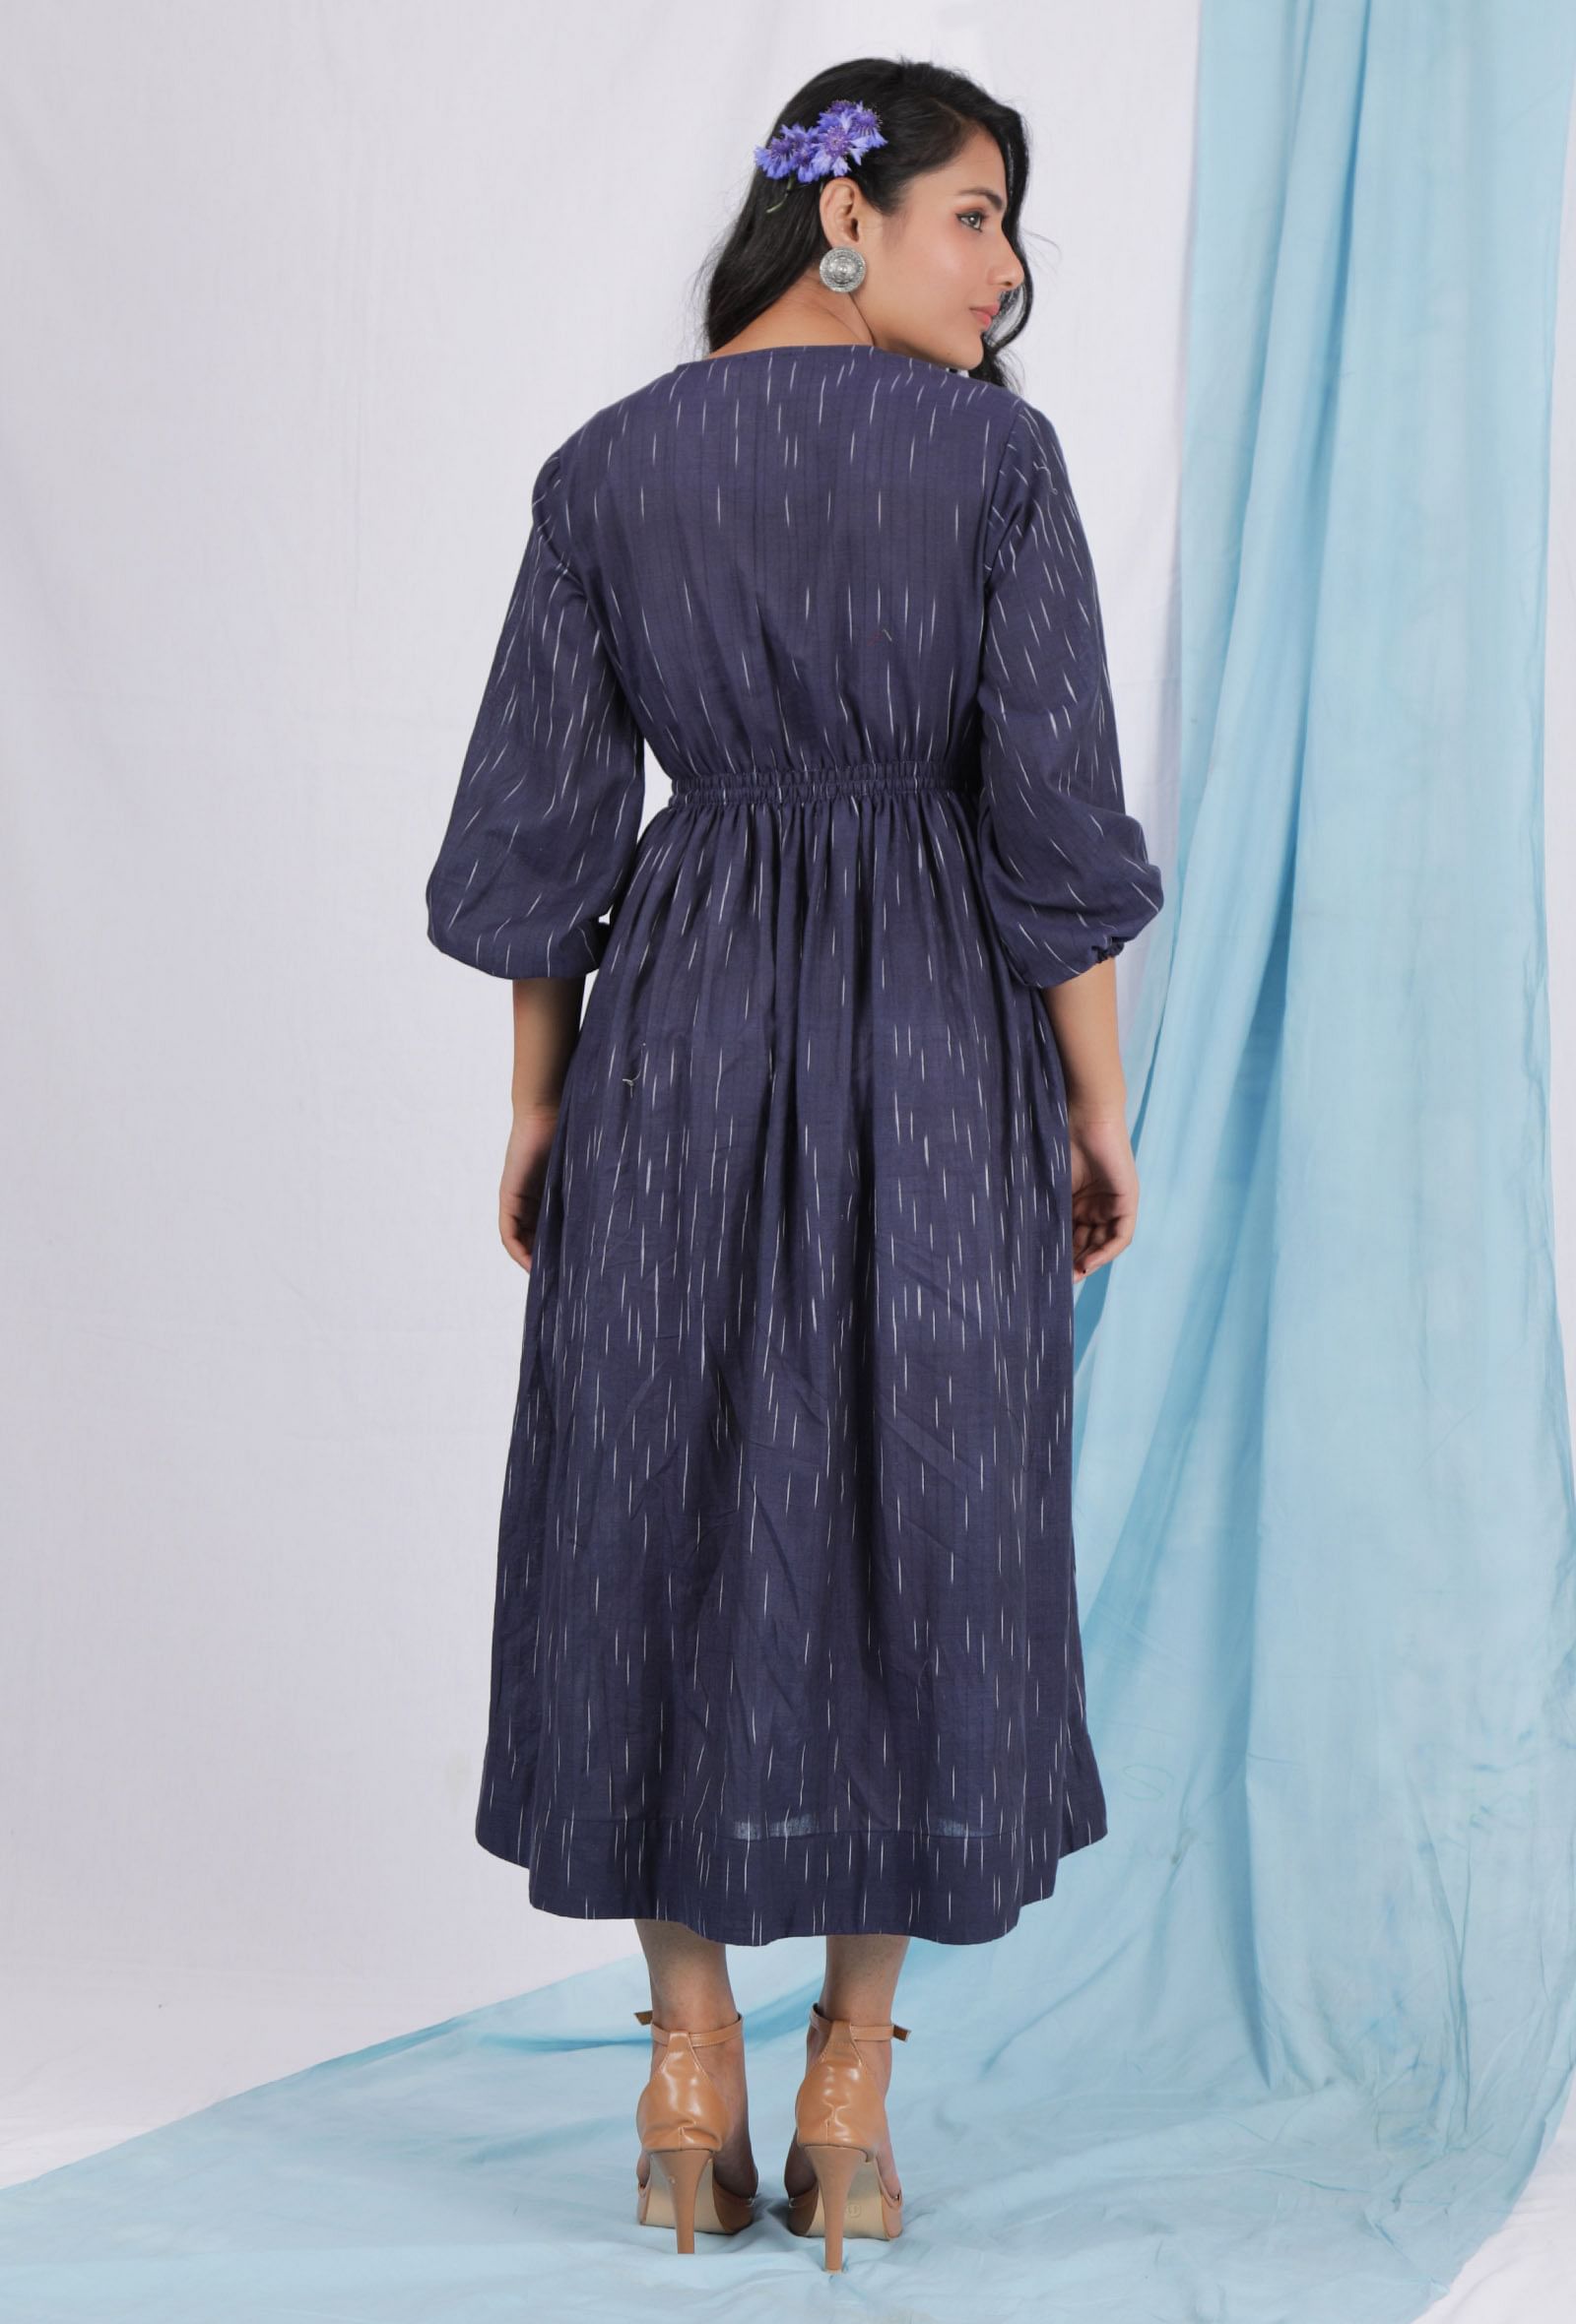 Spruce blue color ikkat overlapped dress